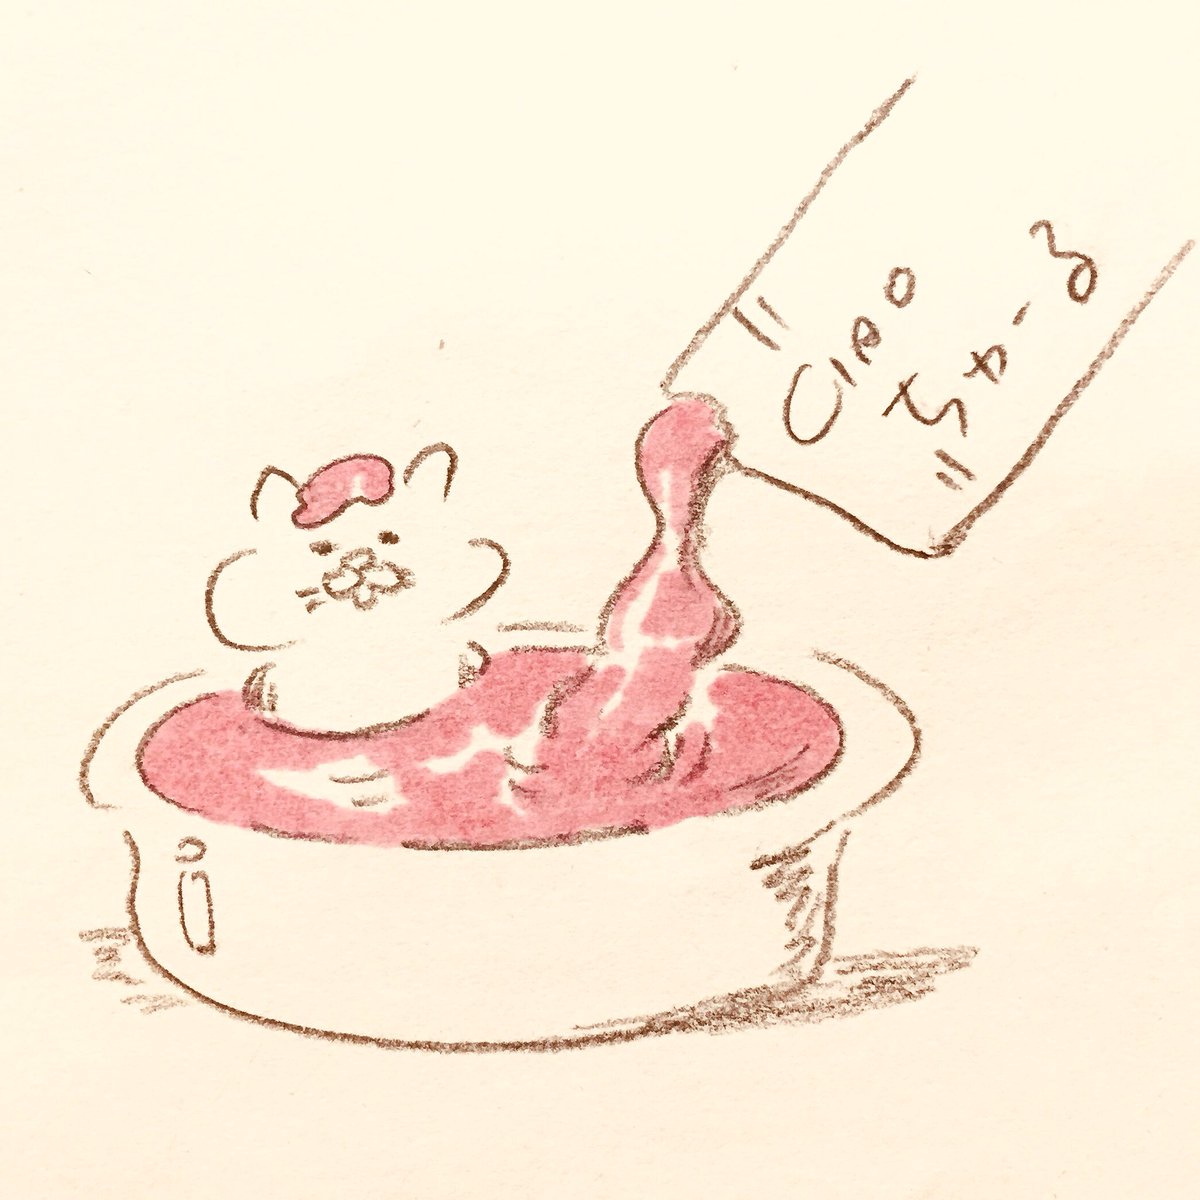 イラストレーター香川尚子 Naoko K V Twitter ちゅーる風呂 Pasty Cat Food Bath Drawing イラスト Illustration 線画 鉛筆画 Illustrator らくがき Art Cat ねこ Catlover かわいい ちゅーる いなばちゃおちゅーる Kawaii Cartoon マンガ